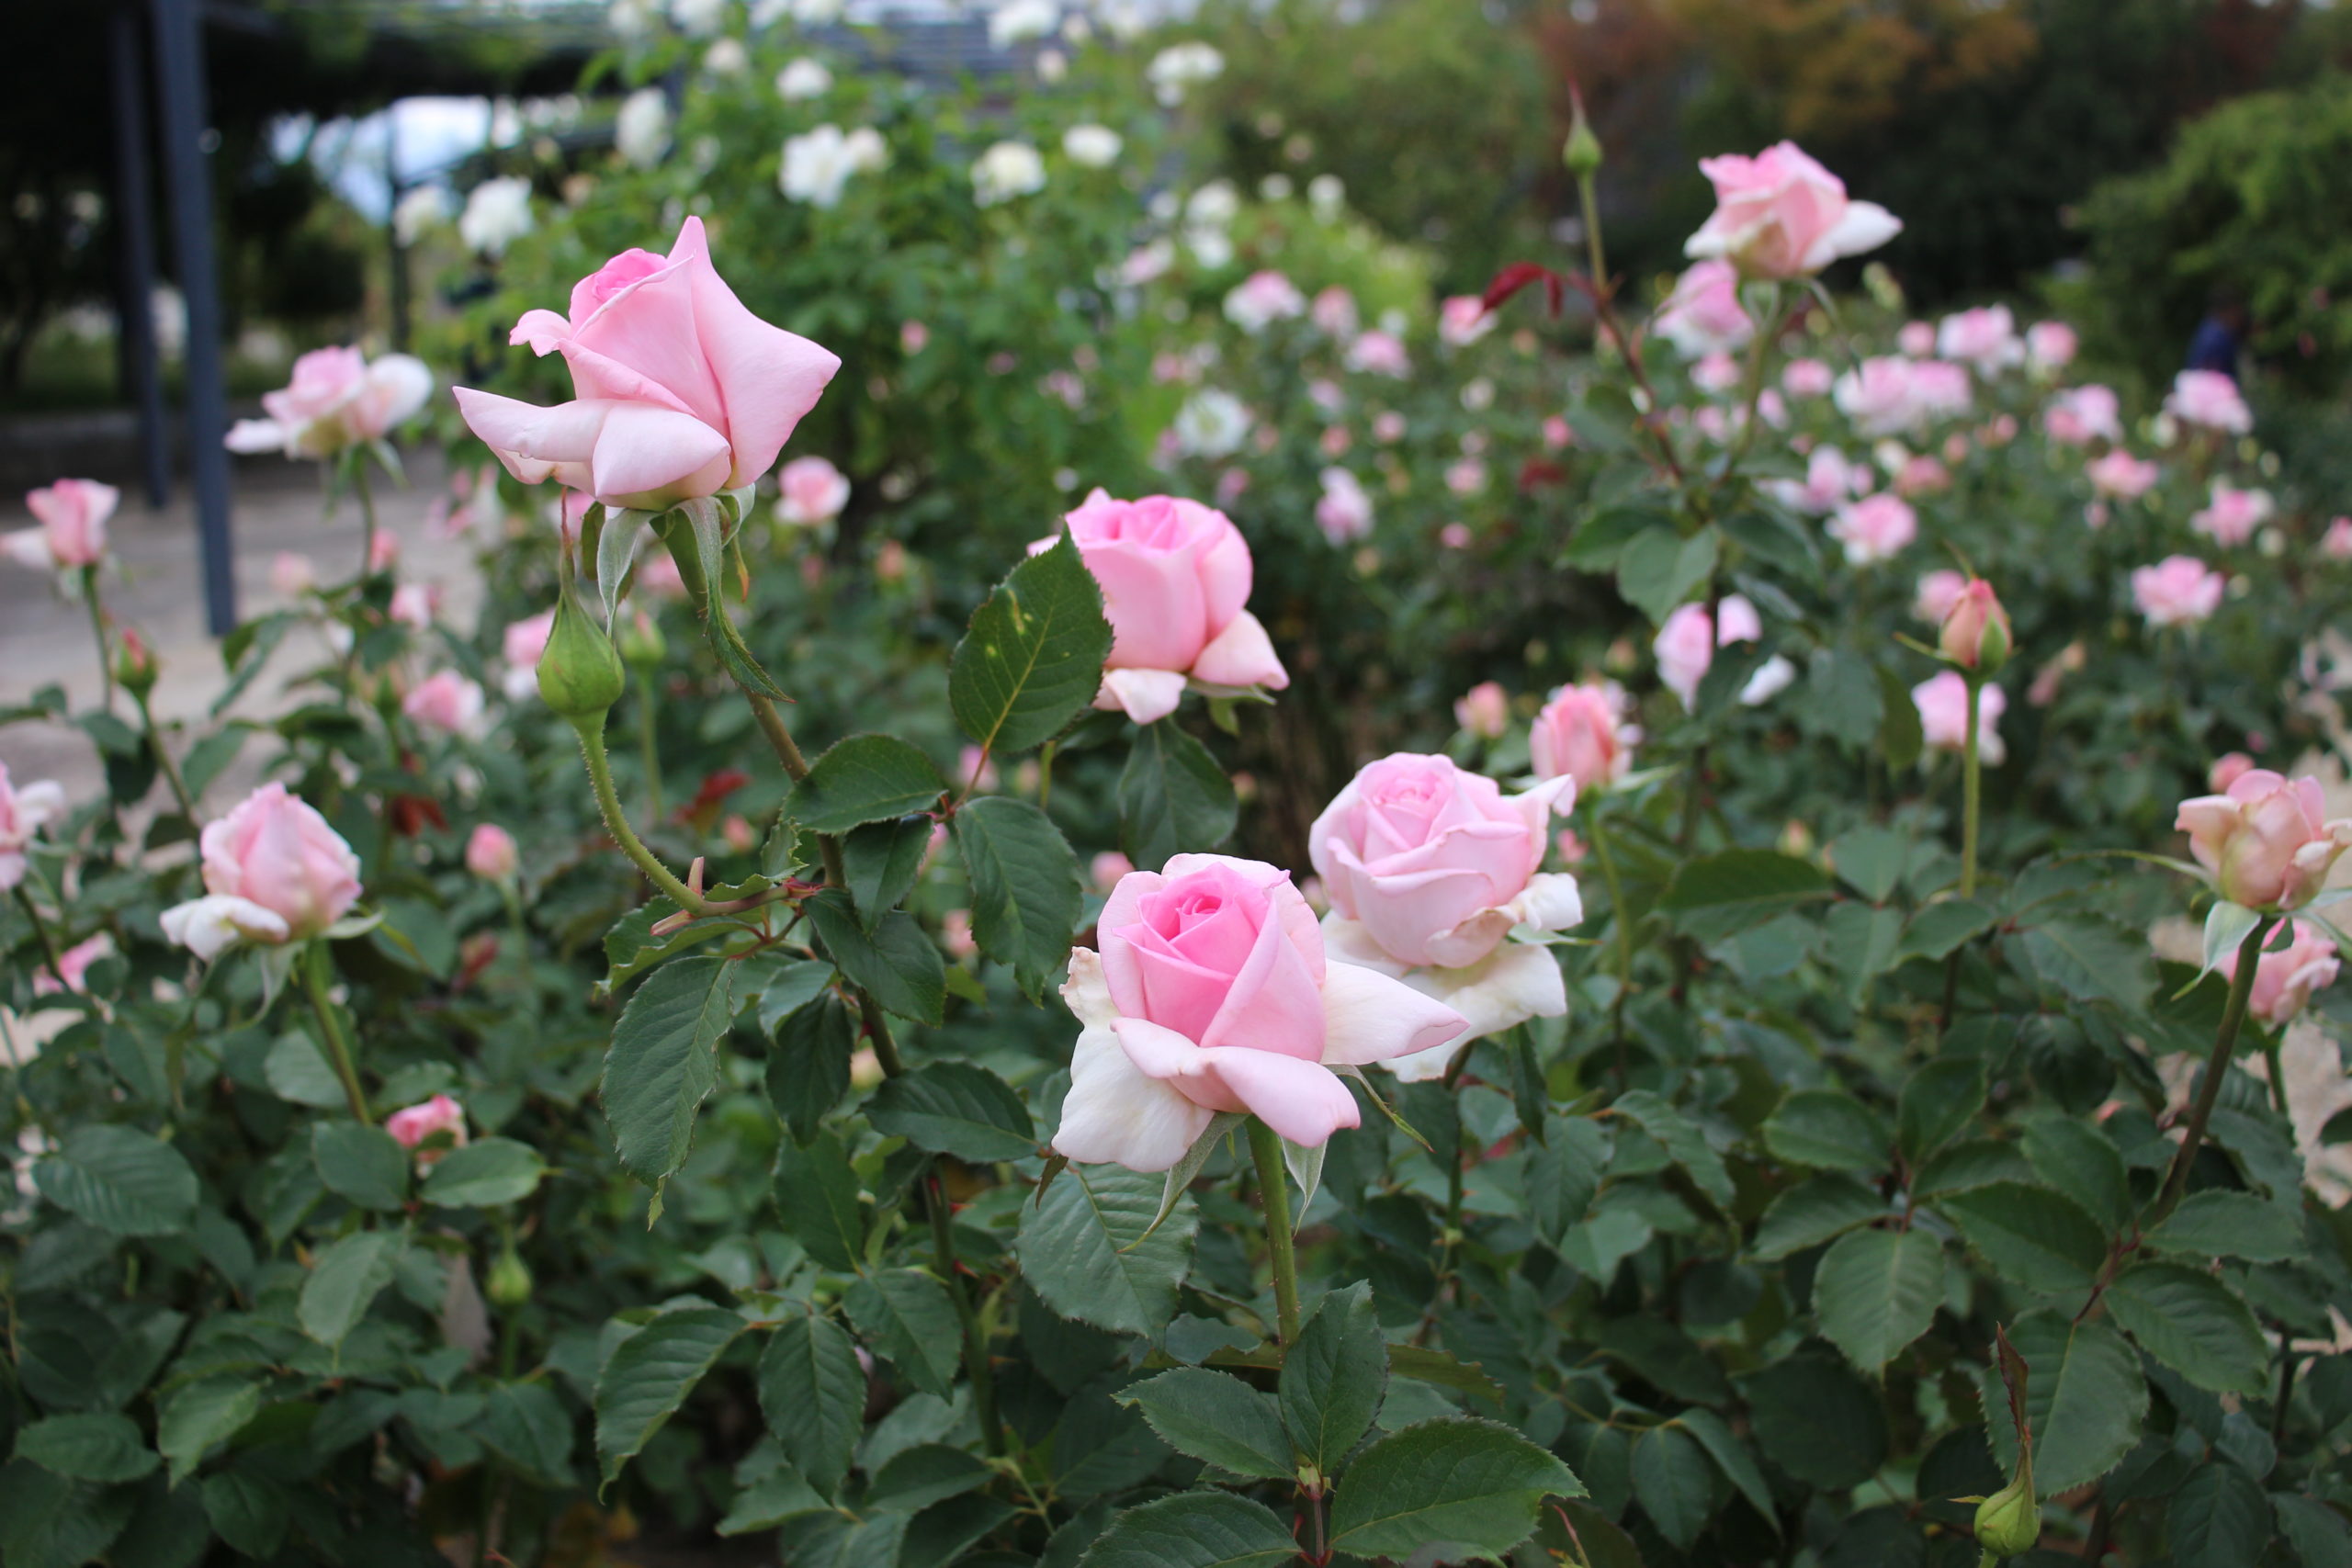  10月のバラ【フレグラントヒル】＠万博記念公園平和のバラ園